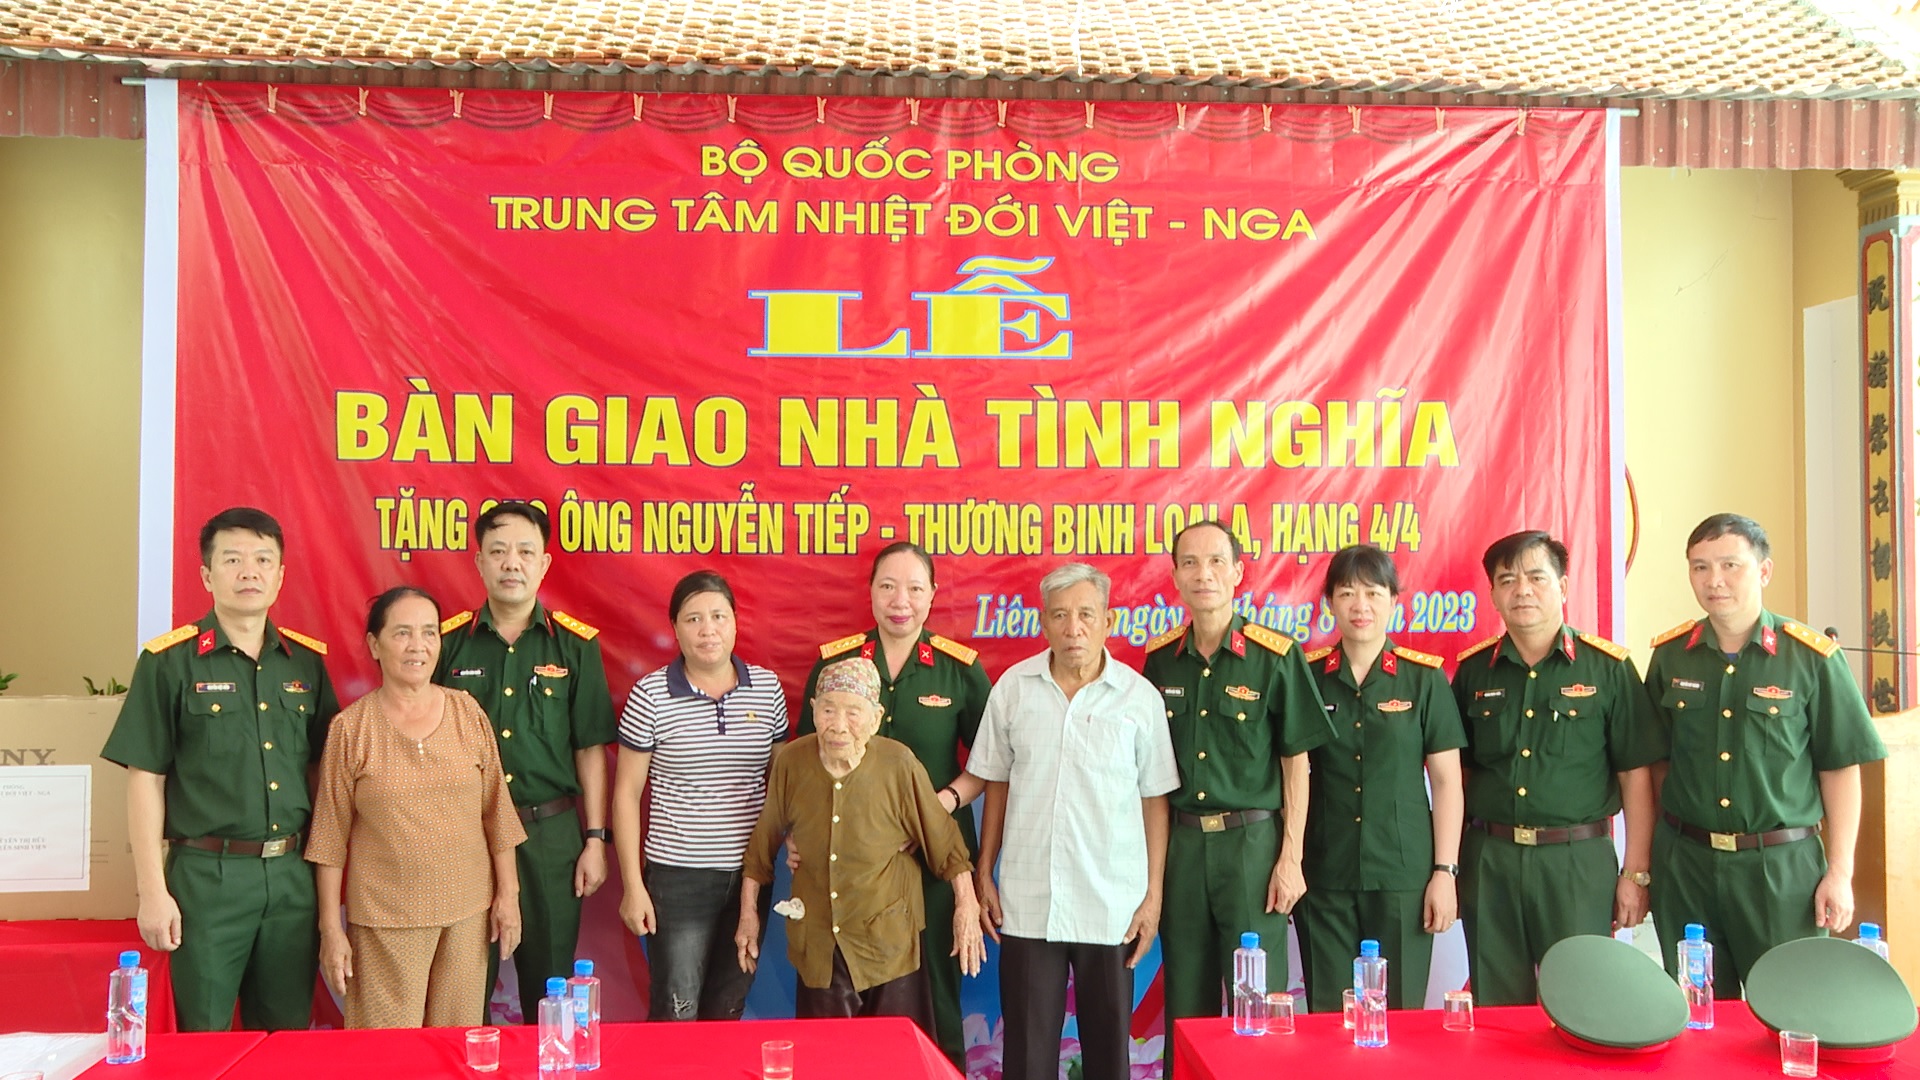 Trung tâm Nhiệt đới Việt - Nga trao tặng nhà tình nghĩa cho gia đình chính sách tại Hải Phòng